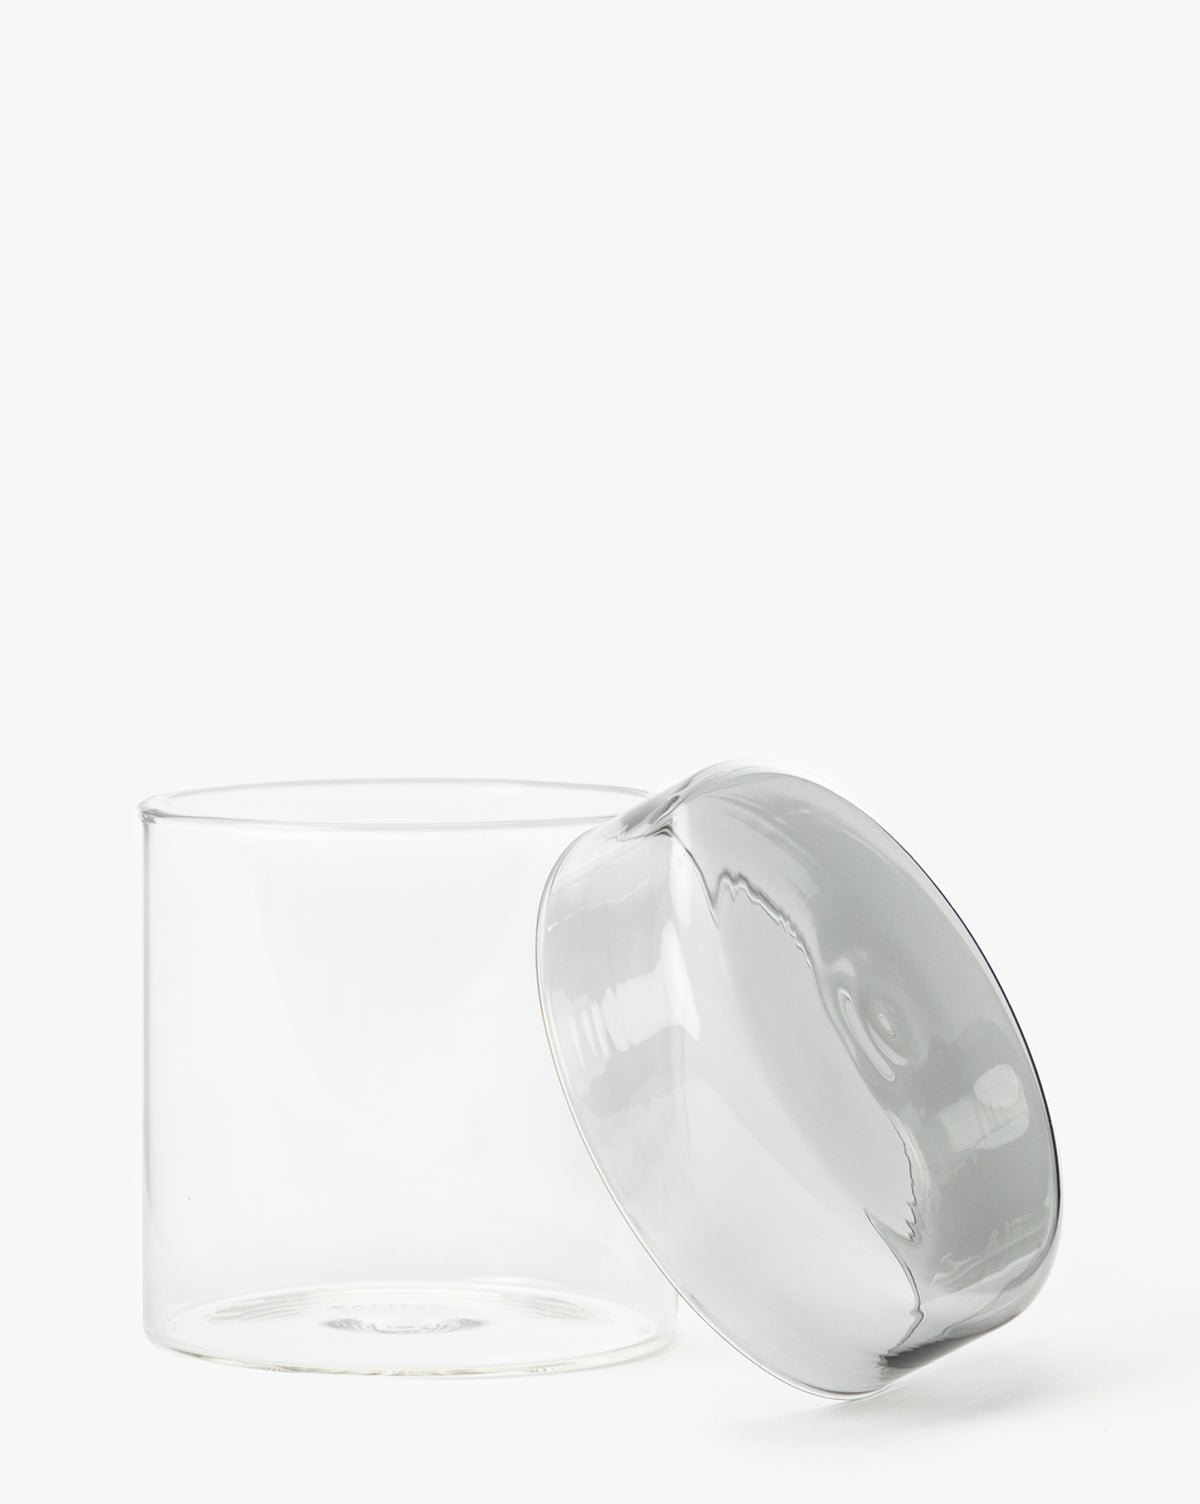 Zodax, Kesey Glass Jar